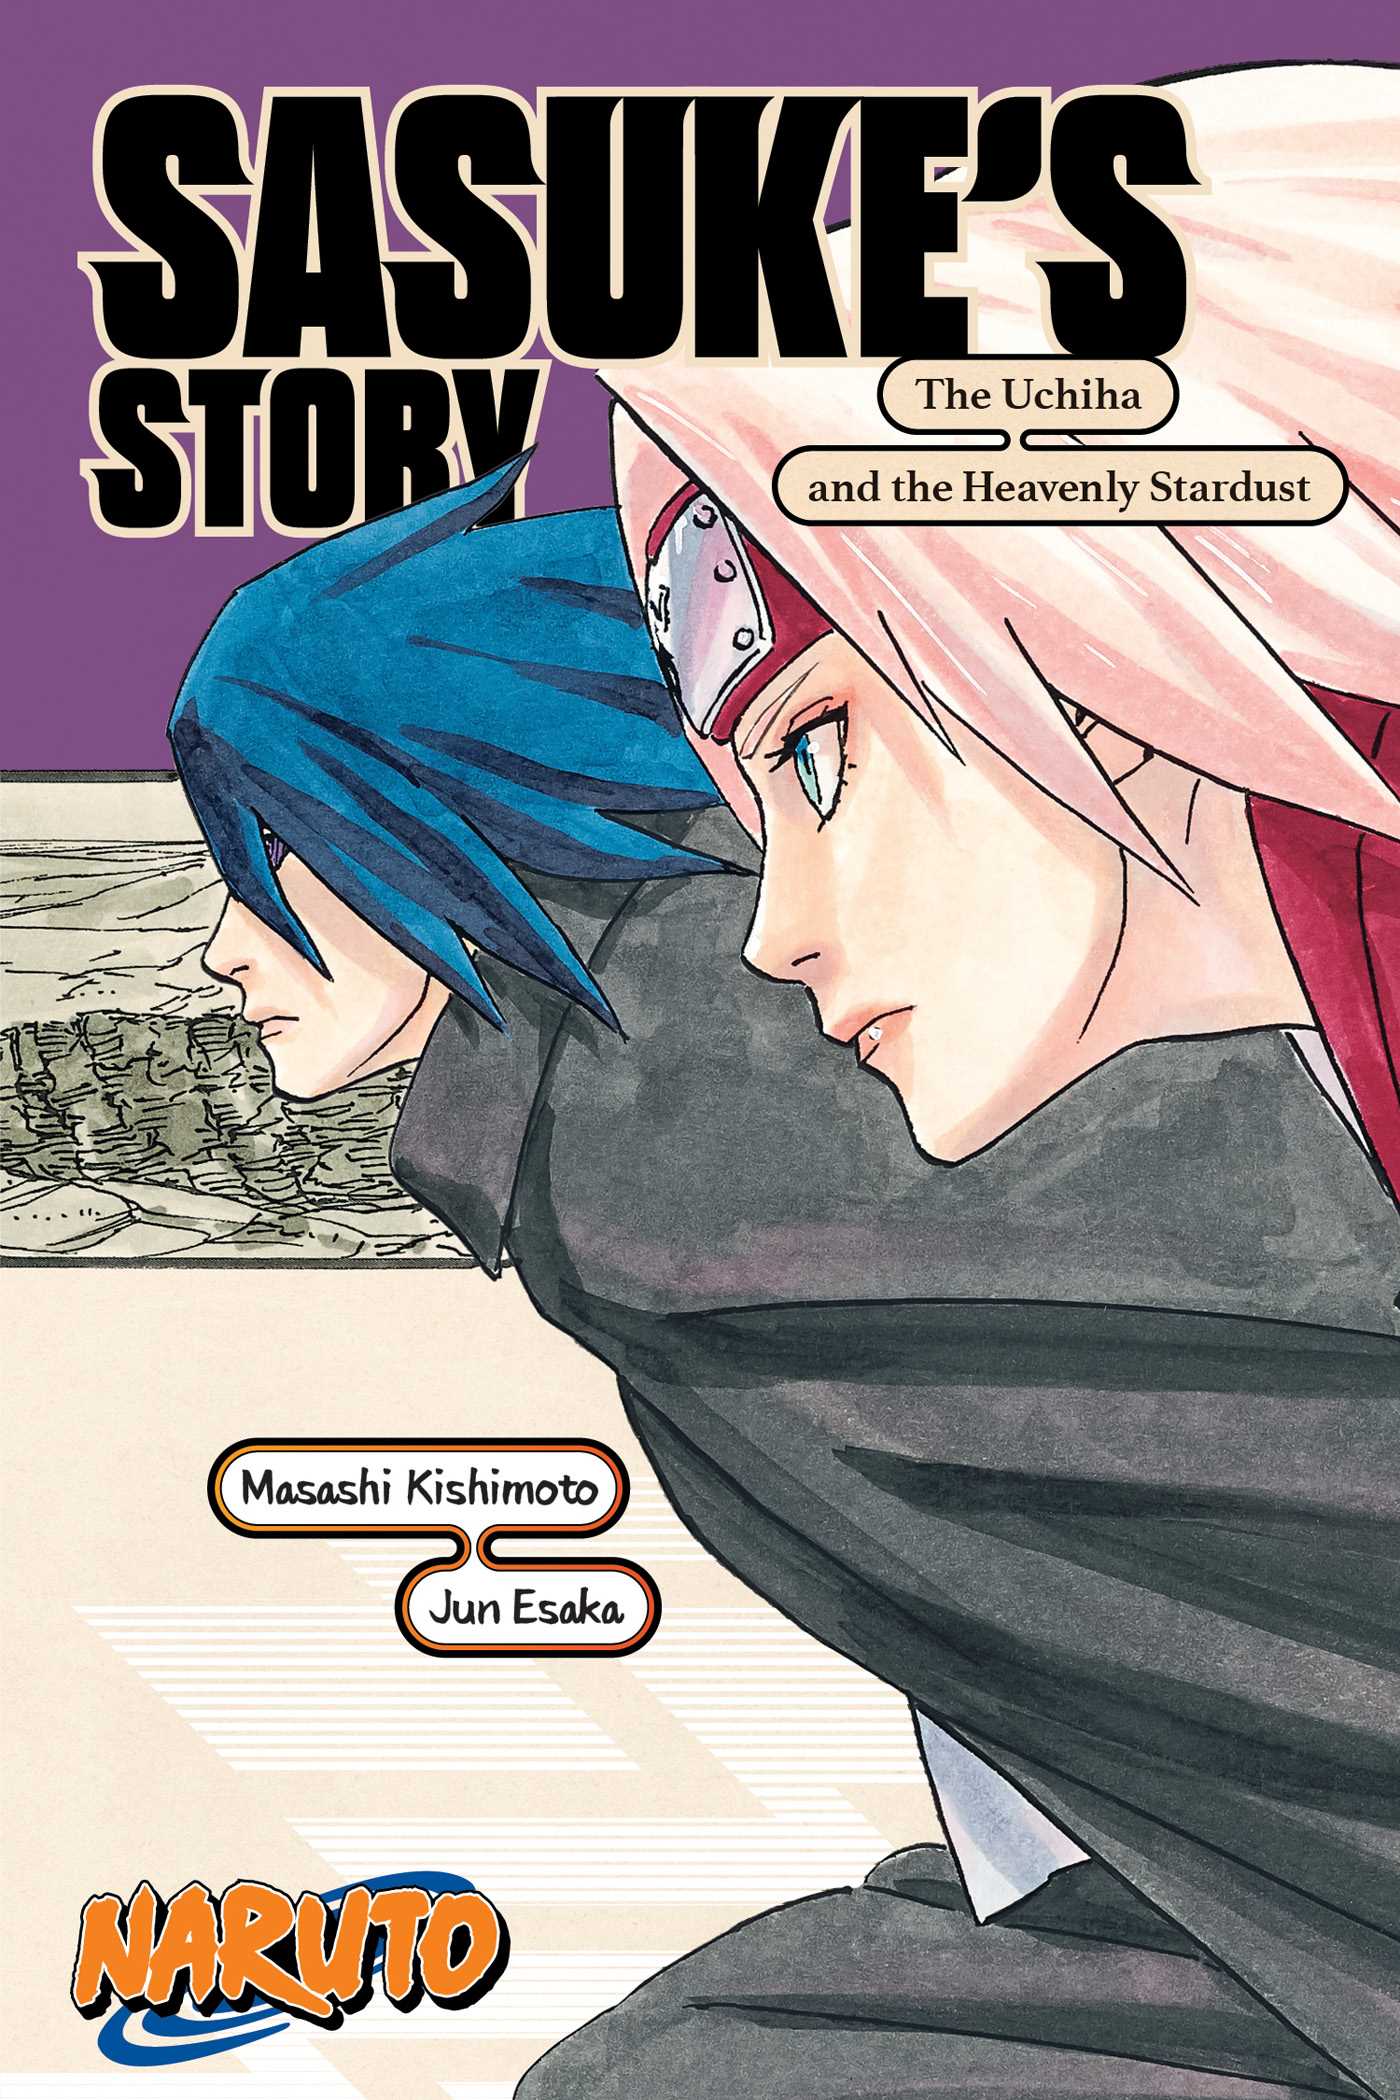 Naruto Sasuke's Story The Uchiha and the Heavenly Stardust